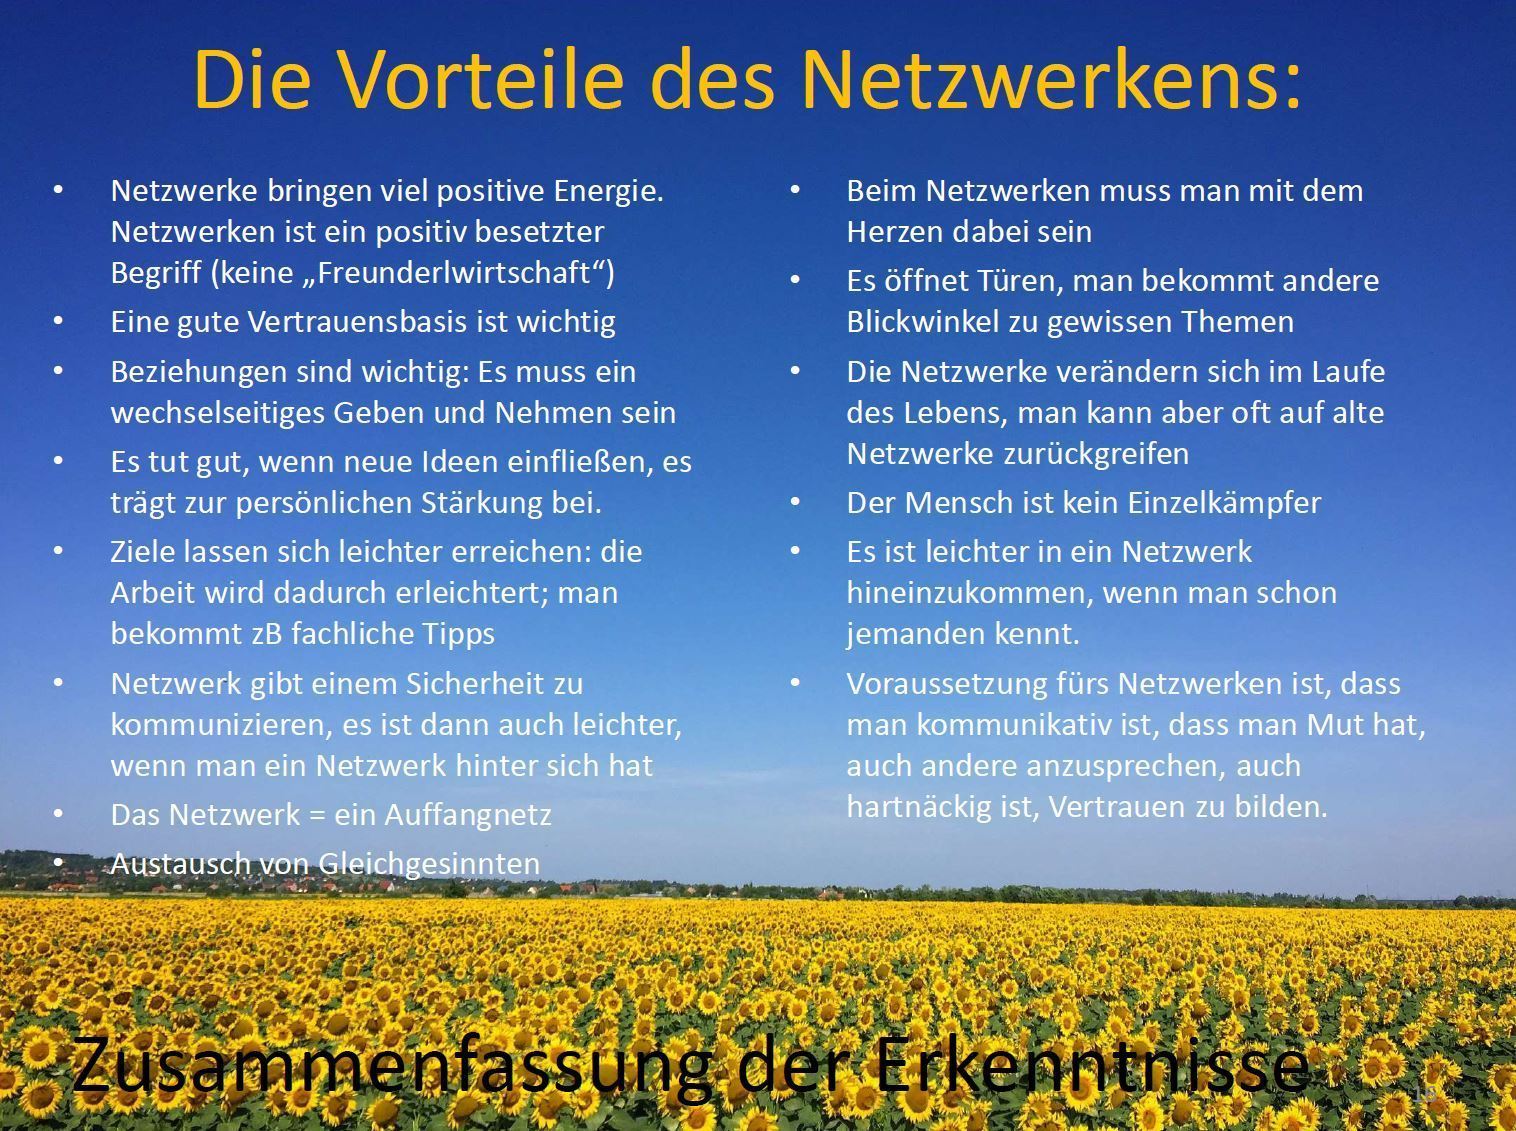 Die Vorteile des Netzwerkens.jpg